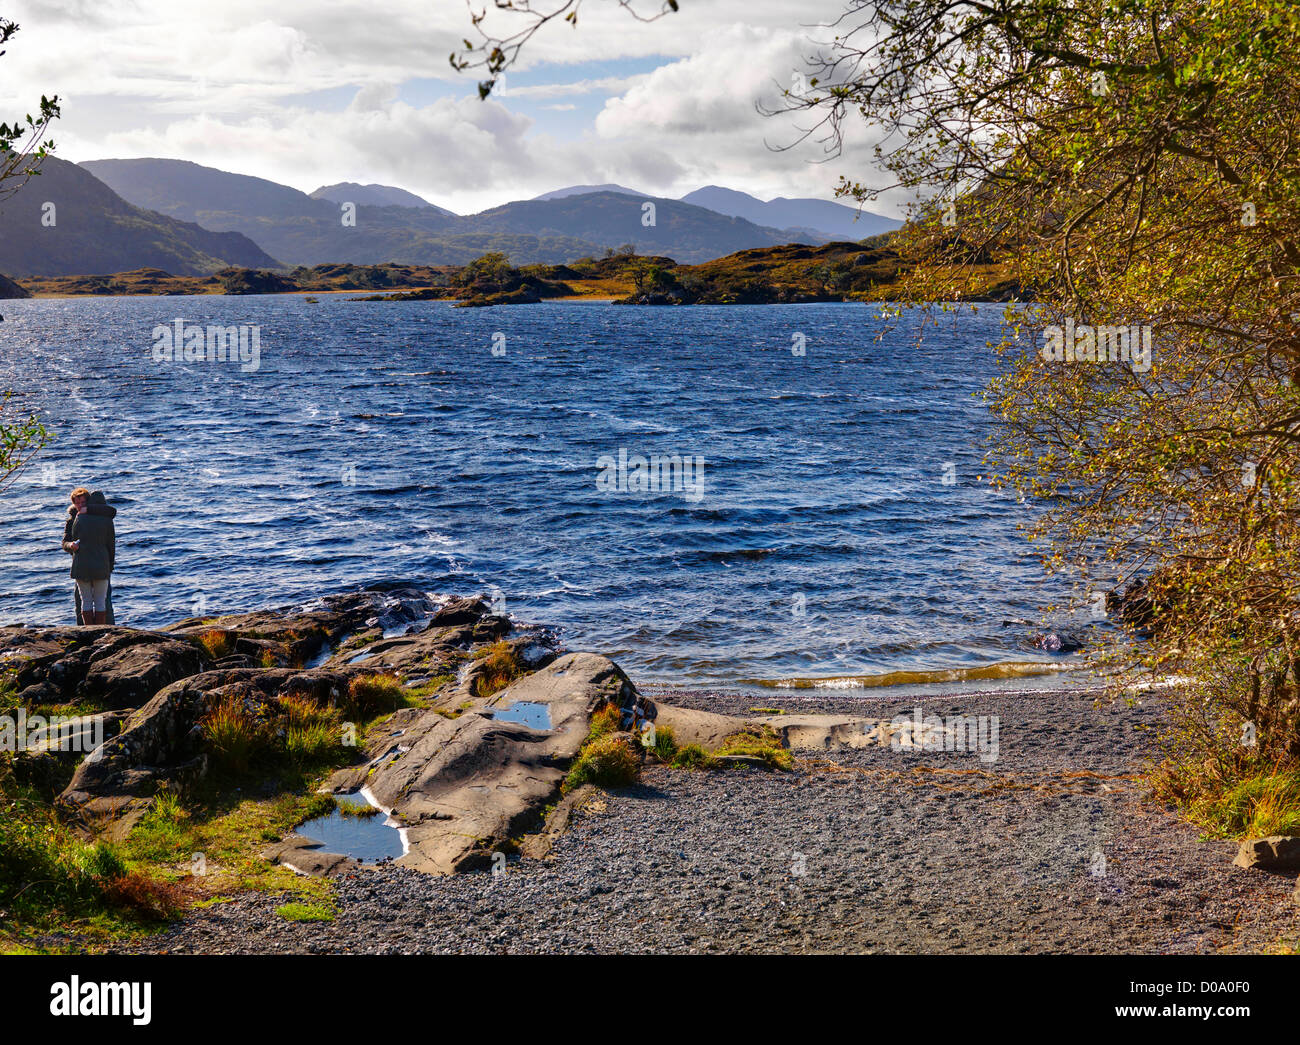 El superior de largo alcance, Los Lagos, el Parque Nacional de Killarney. El condado de Kerry, Irlanda Foto de stock